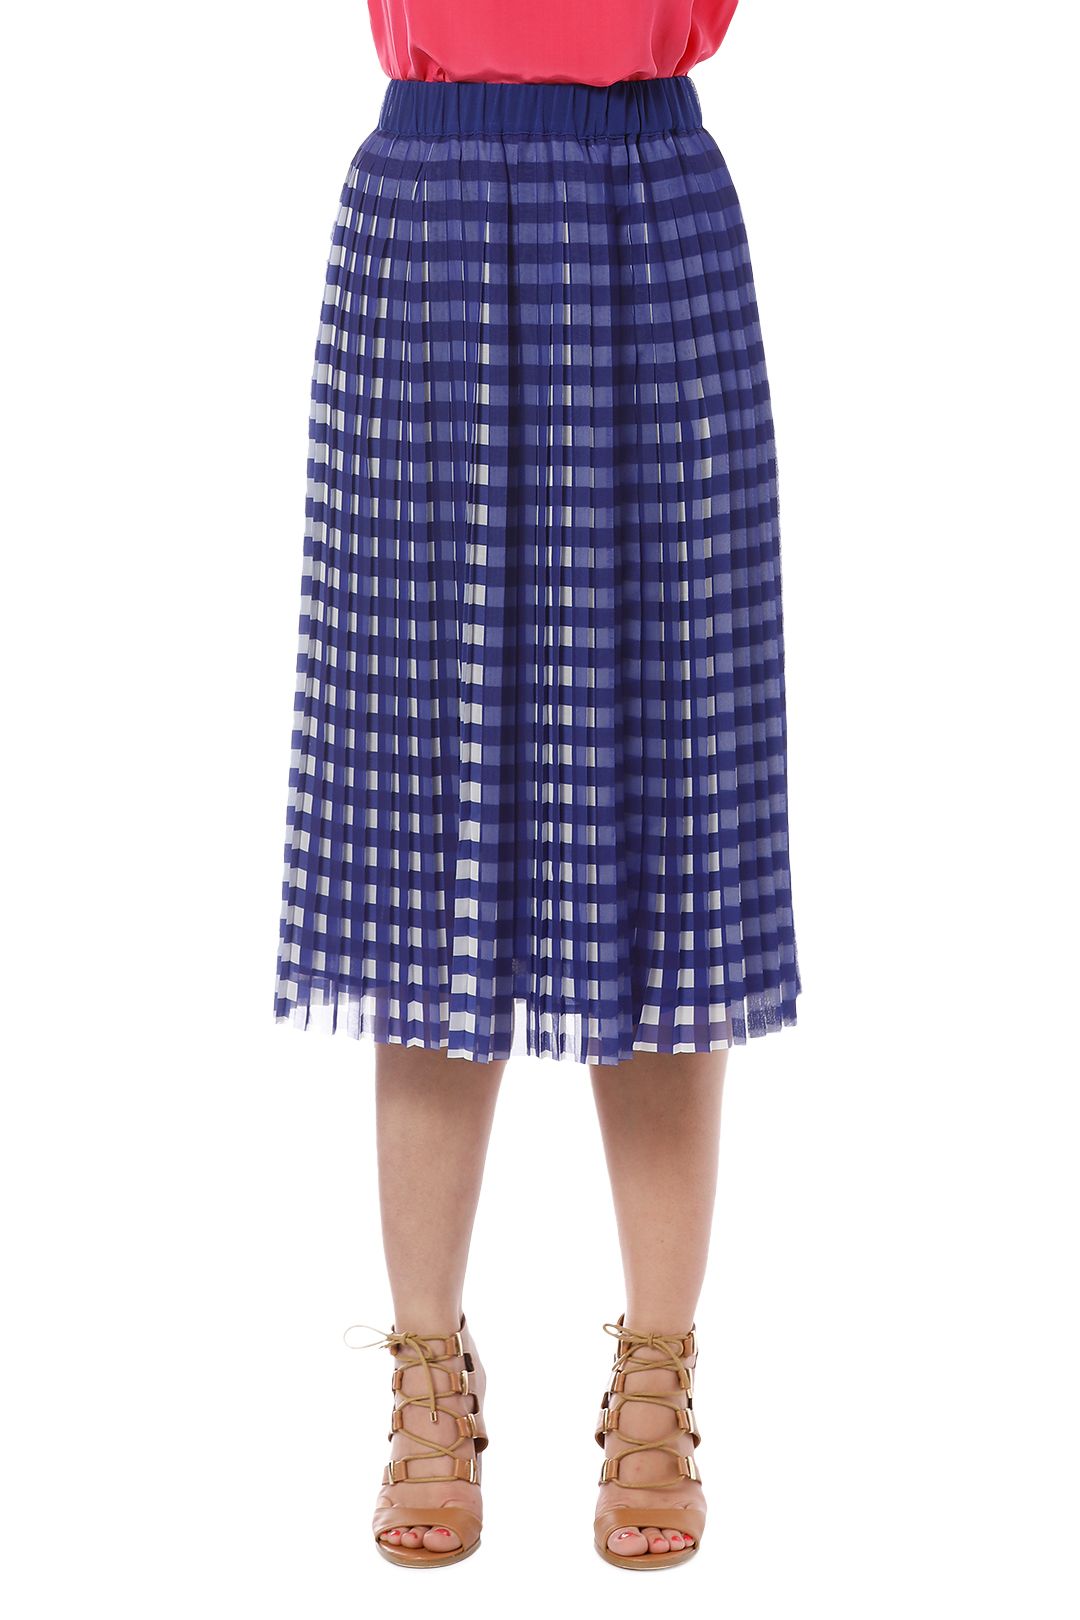 Gorman - Kinetic Pleat Skirt - Blue - Front Crop